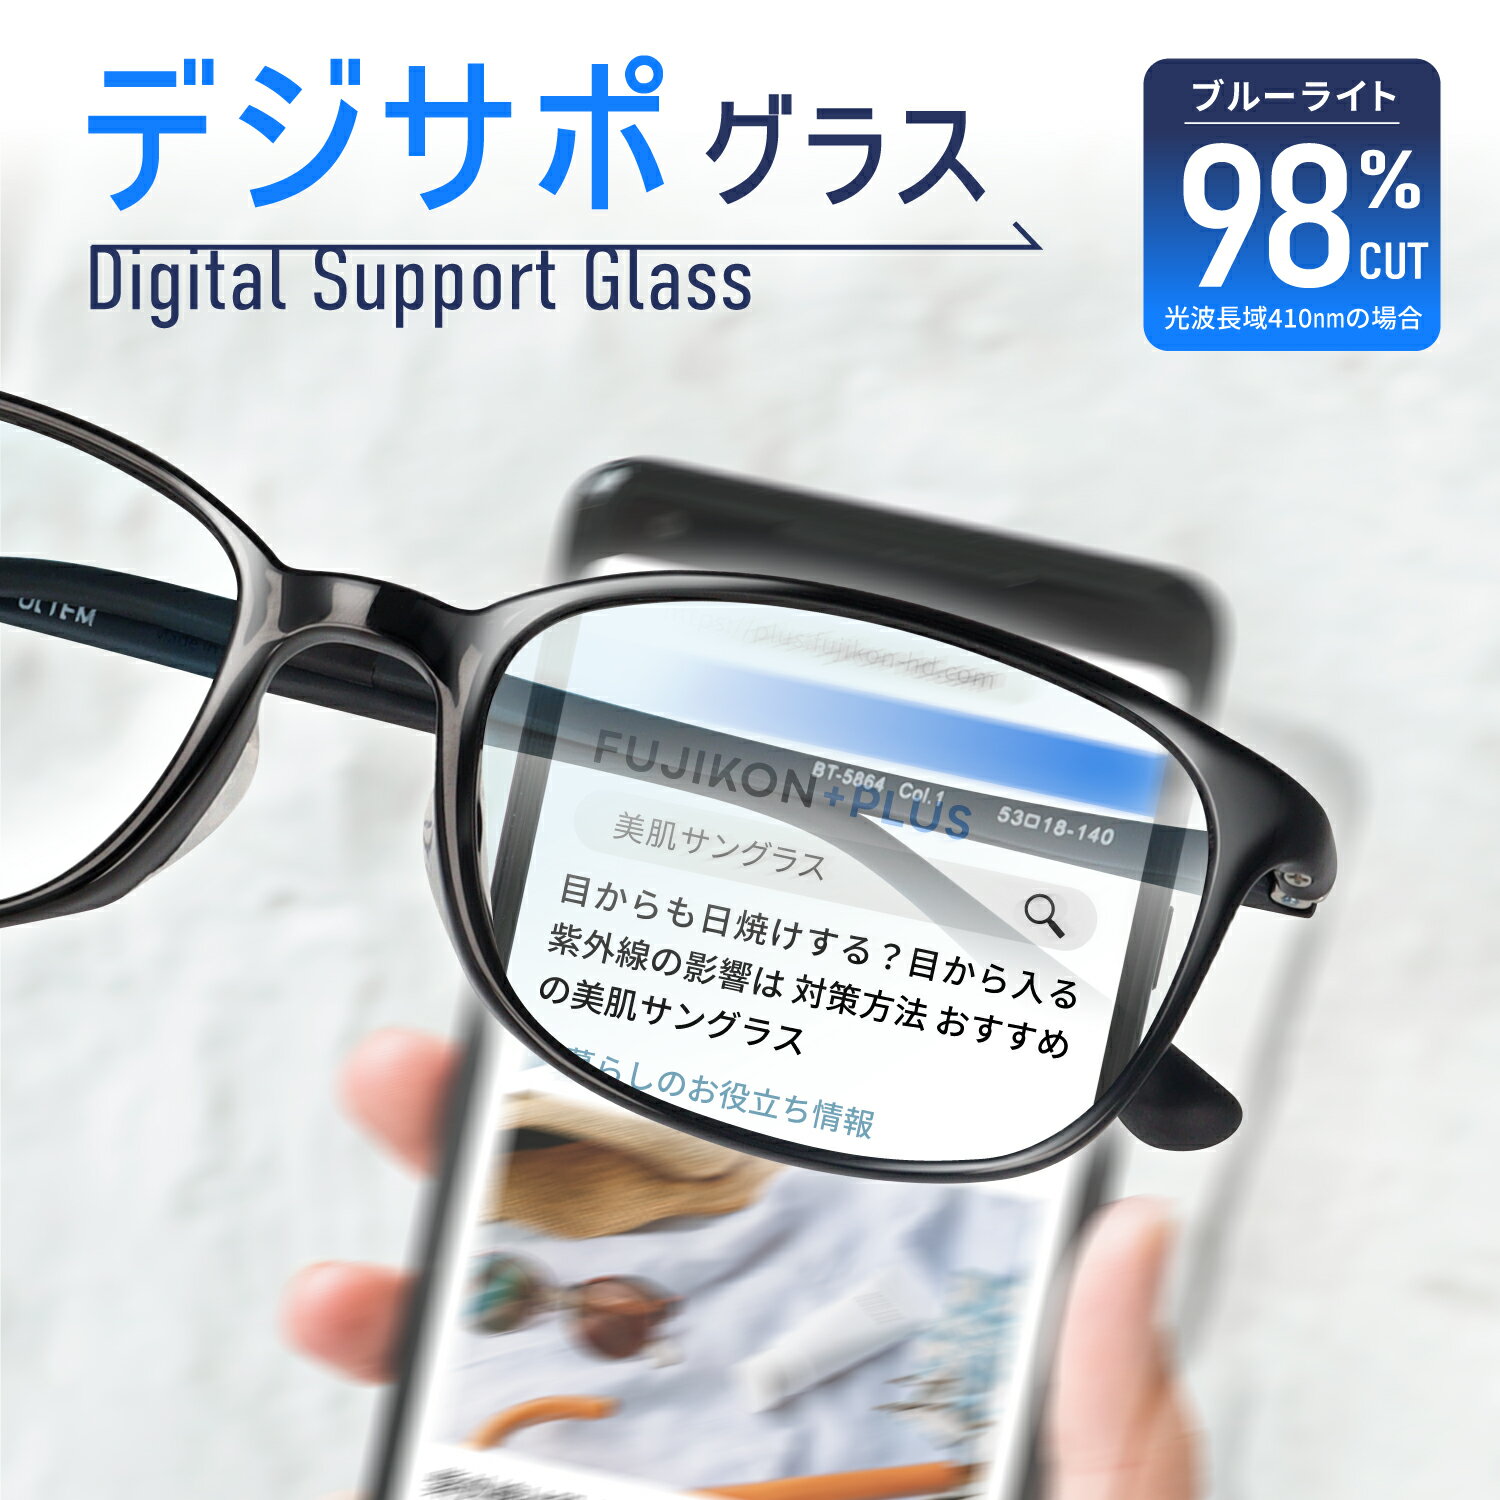 ブルーライト カット メガネ メンズ レディース スマホ が見やすい デジサポグラス パソコン 用メガネ PC メガネ PC眼鏡 軽量 疲れない ブルーライト メガネ PCめがね 伊達メガネ おしゃれ ブルーライトカット BT-5864